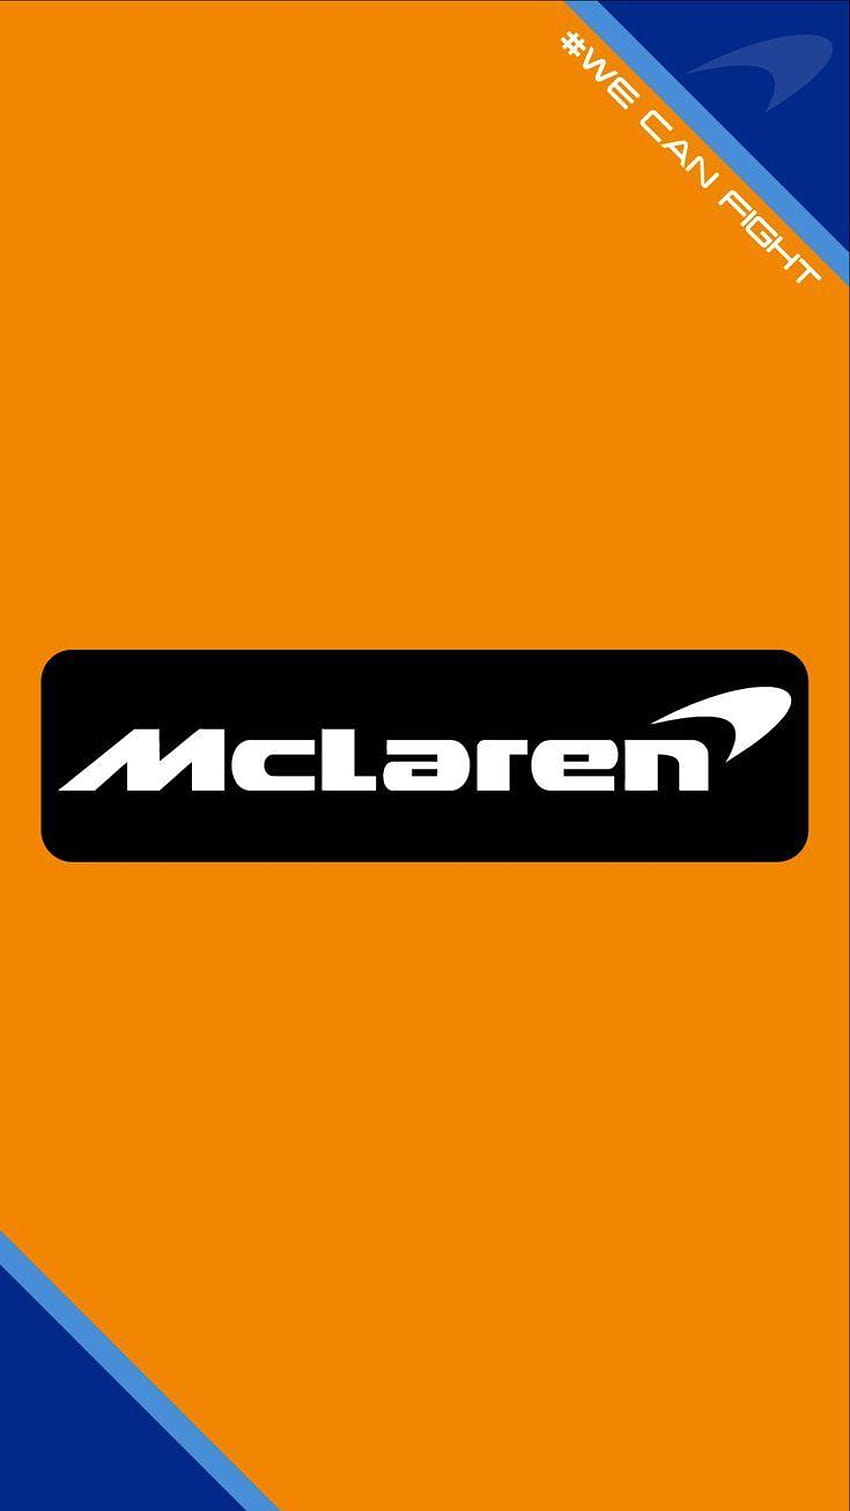 McLaren F1 Team 2018 McLaren Formel1 F1, mclaren logo iphone HD phone wallpaper